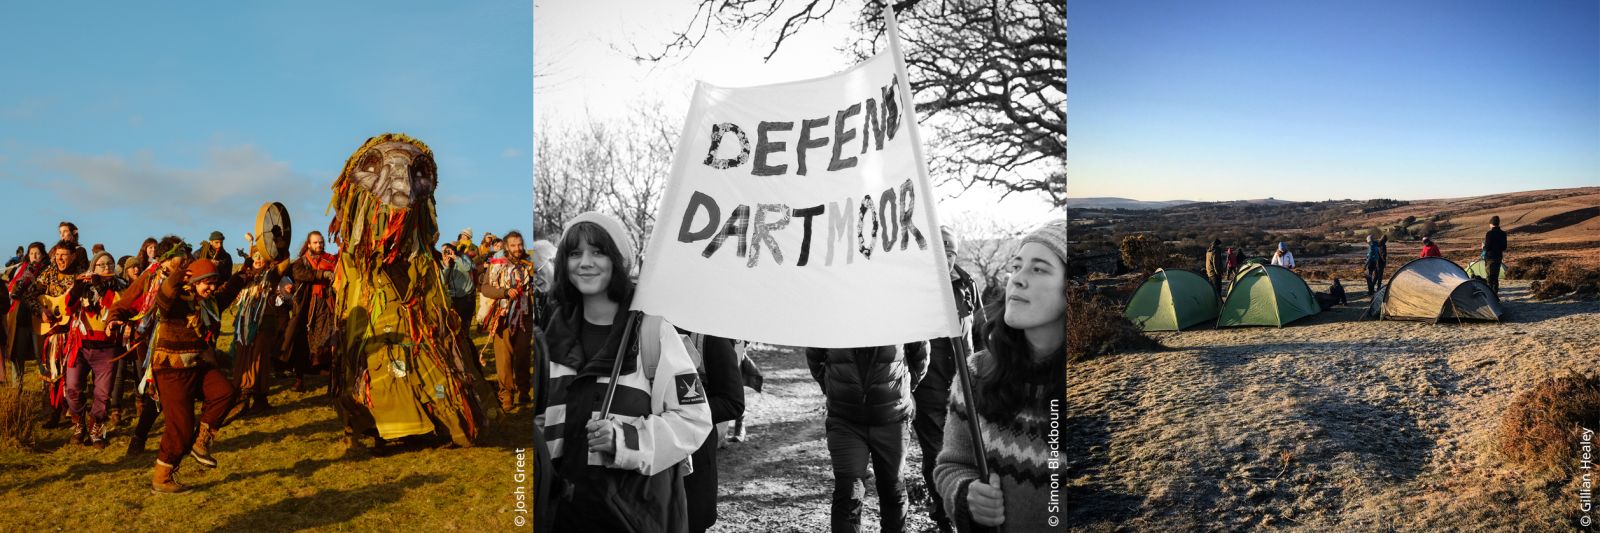 Dartmoor Protests